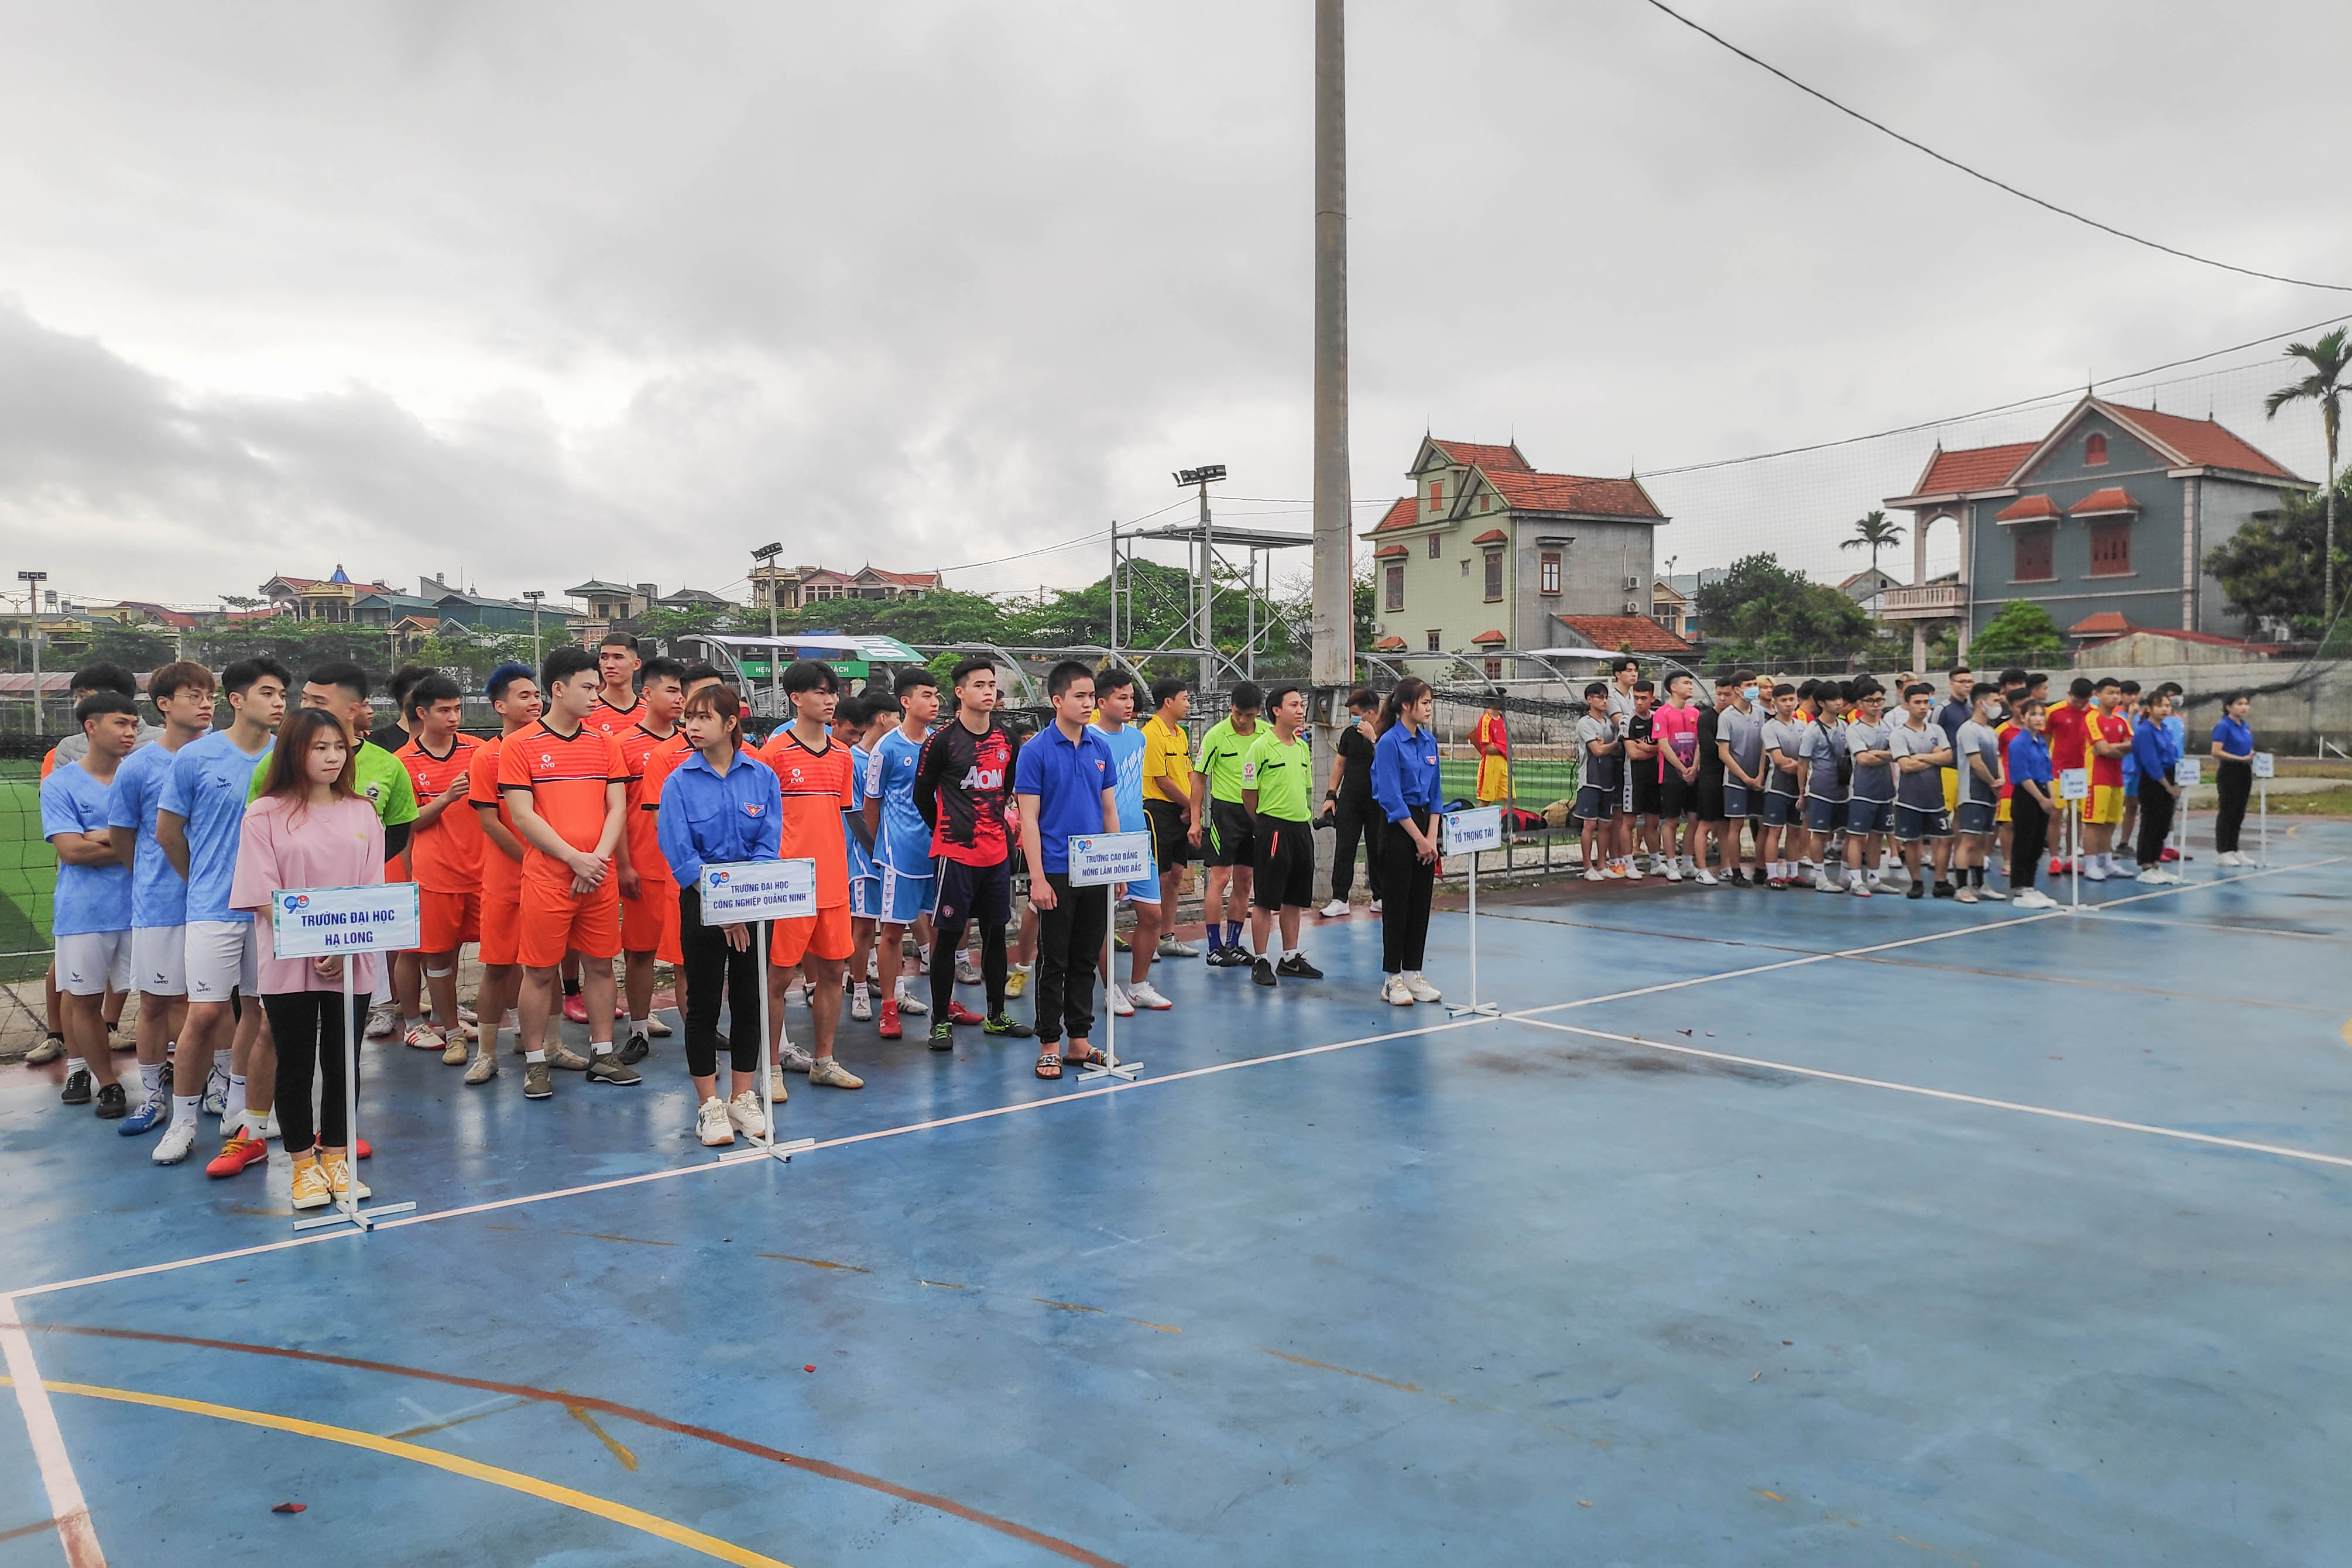 Giải đấu có sự tham gia của 6 đội, với tổng số 84 cầu thủ lđến từ các trường đại học, cao đẳng trên địa bàn tỉnh.